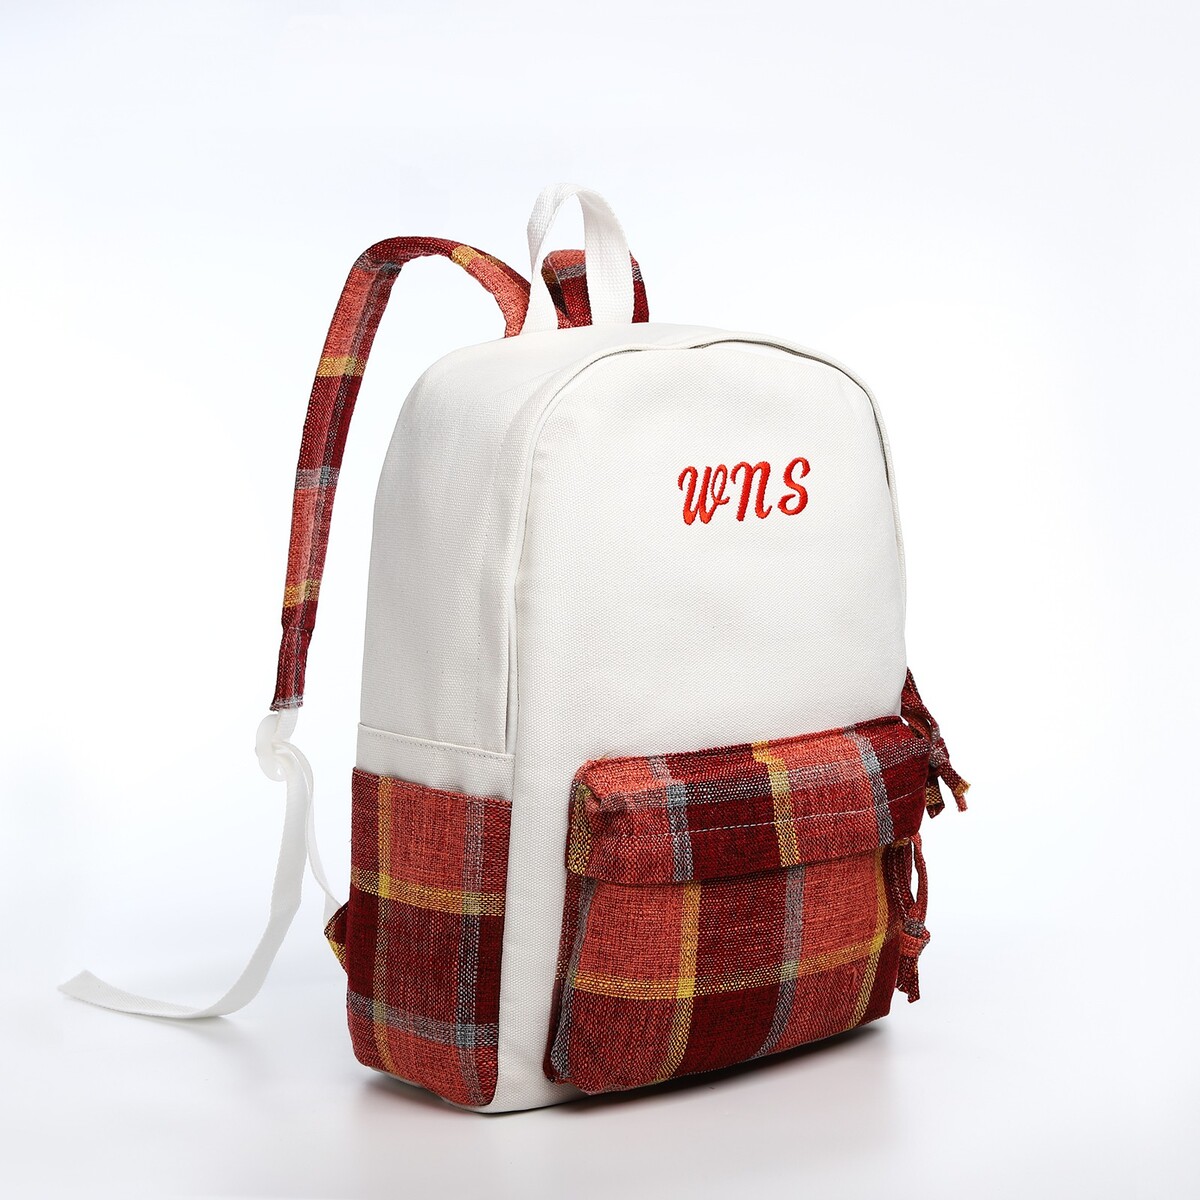 Рюкзак молодежный из текстиля, 3 кармана, цвет белый/коричневый/красный рюкзак молодежный из текстиля 3 кармана белый коричневый голубой